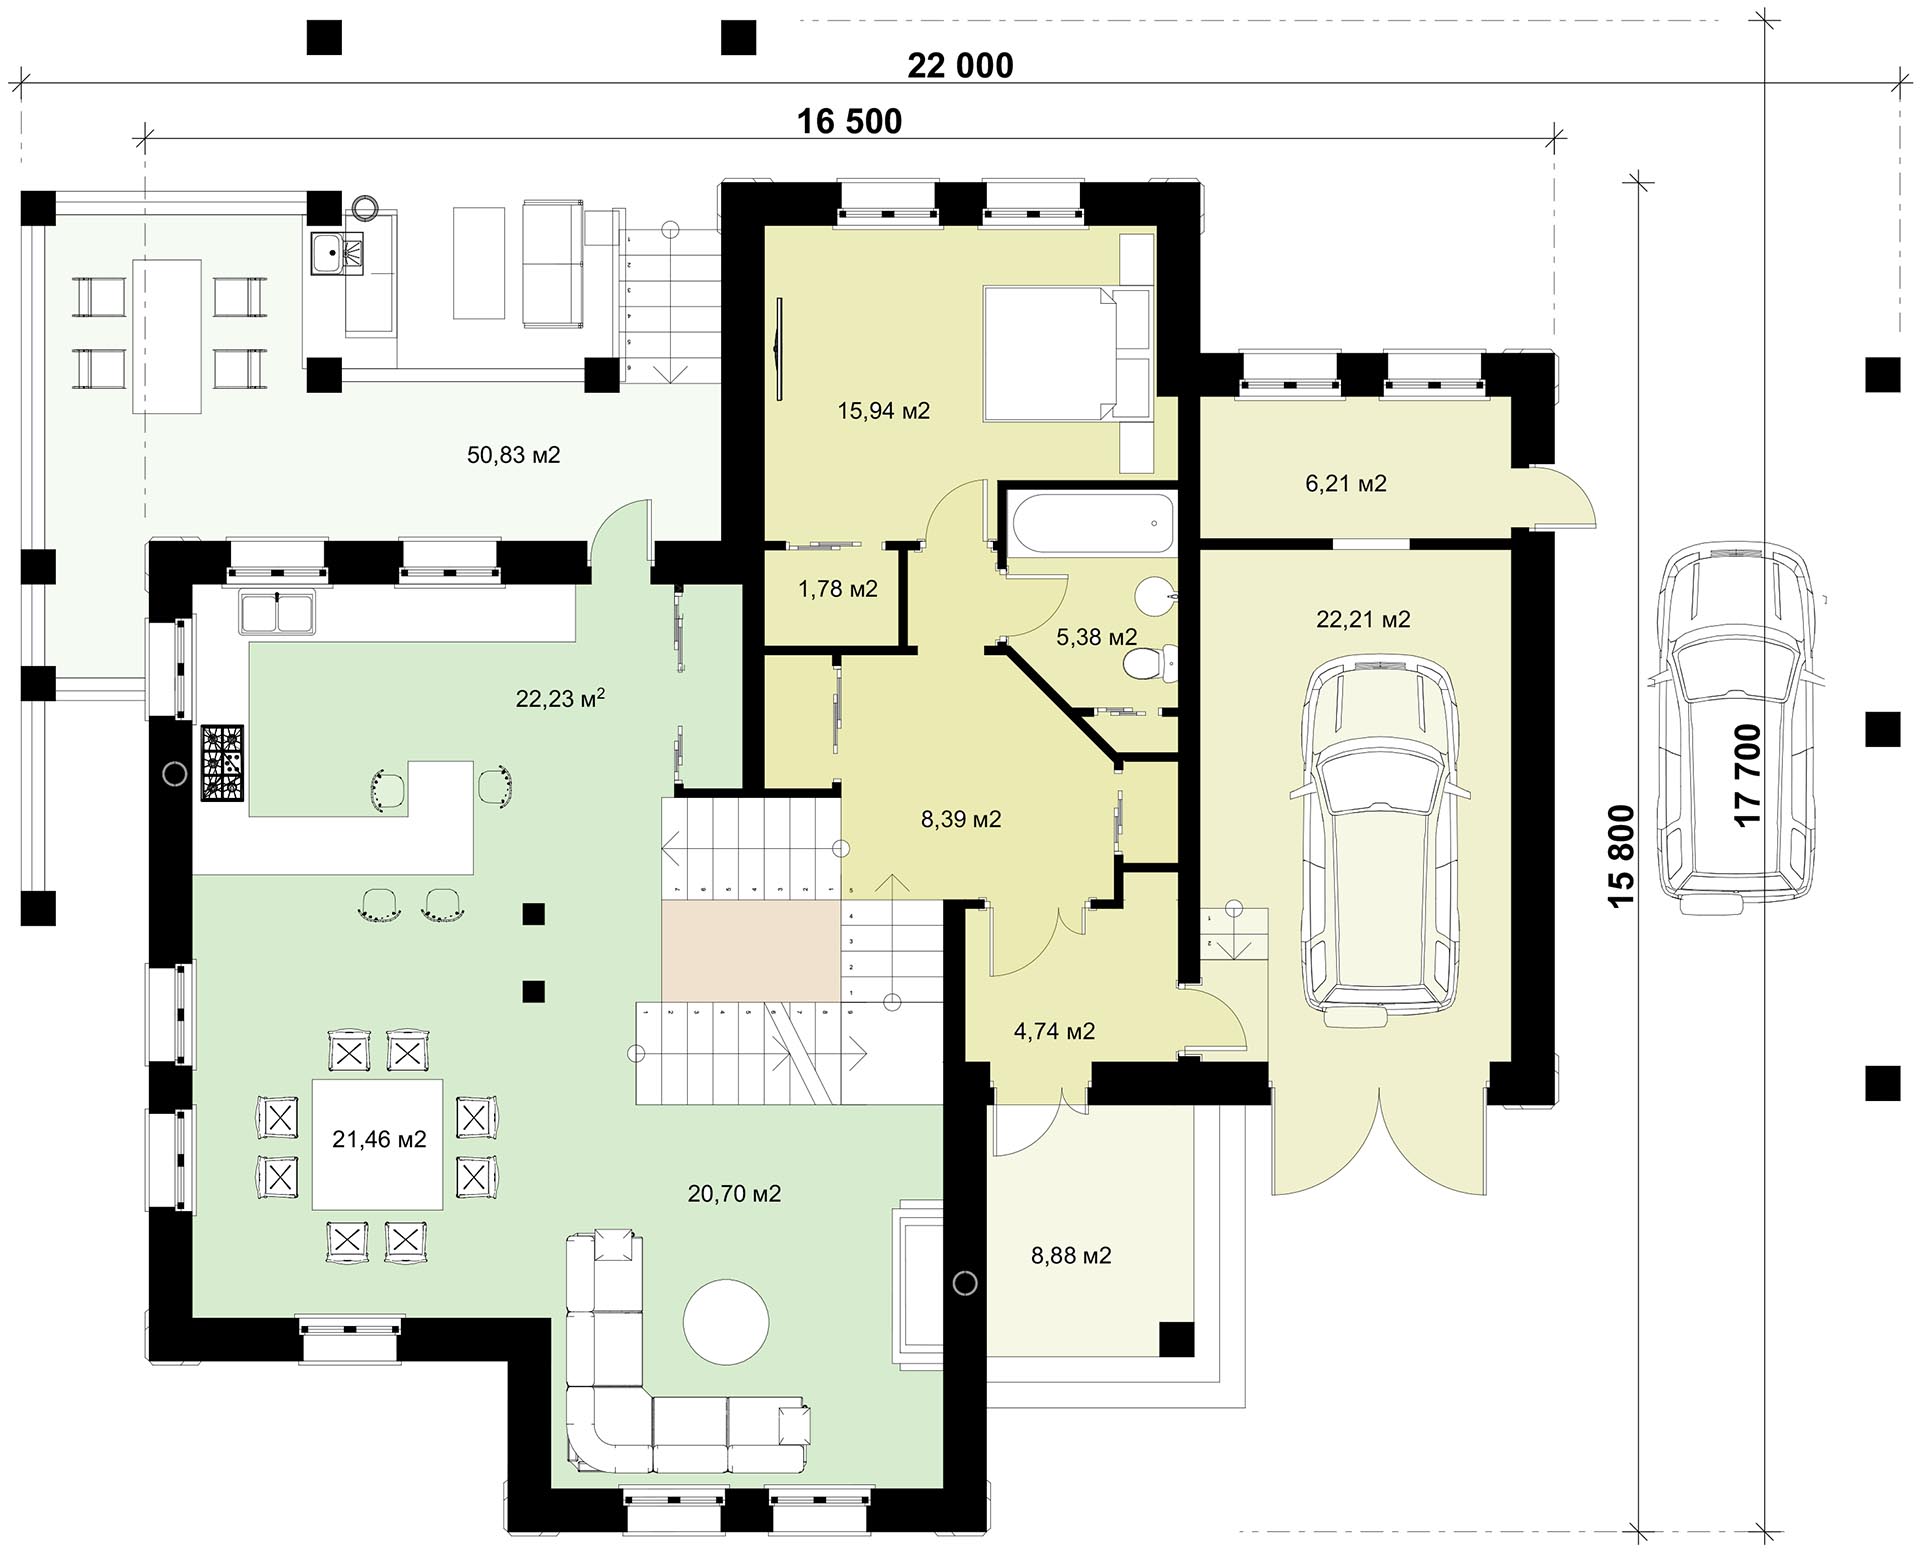 план 1 этажа 9 - комнатного шале - готовый проект от Инваполис